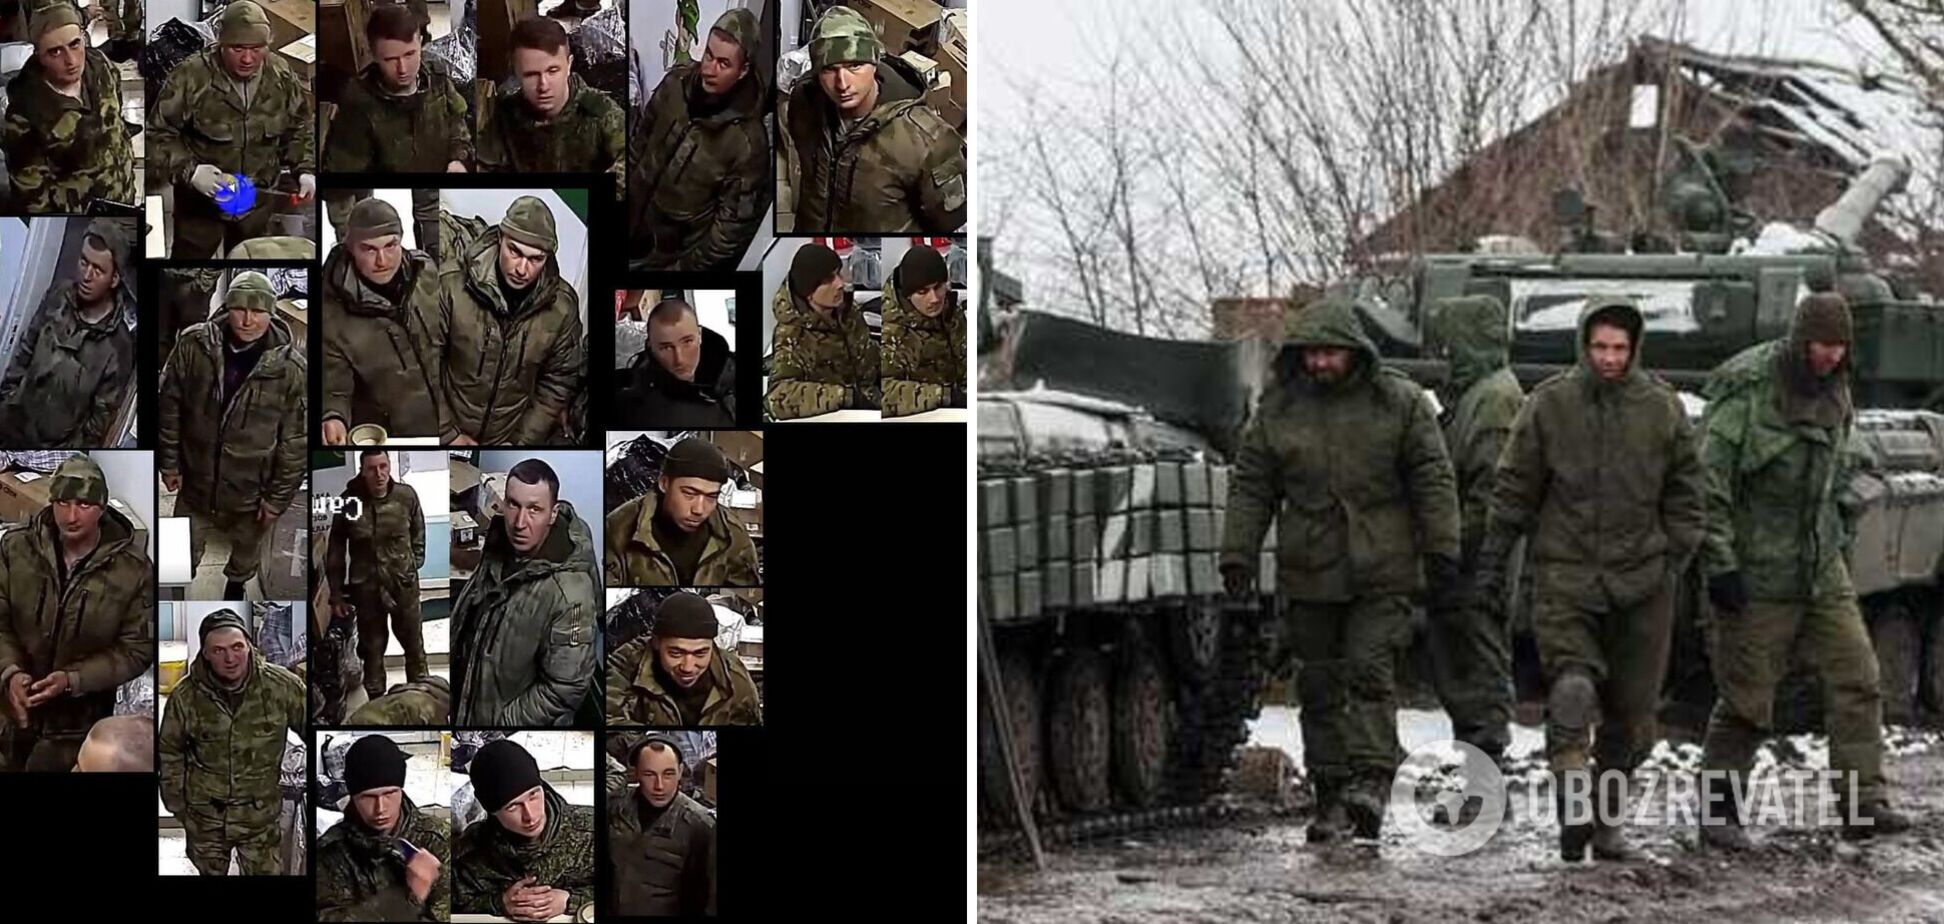 В Беларуси начали публиковать данные солдат-мародеров ВС РФ, которые причастны к преступлениям в Украине